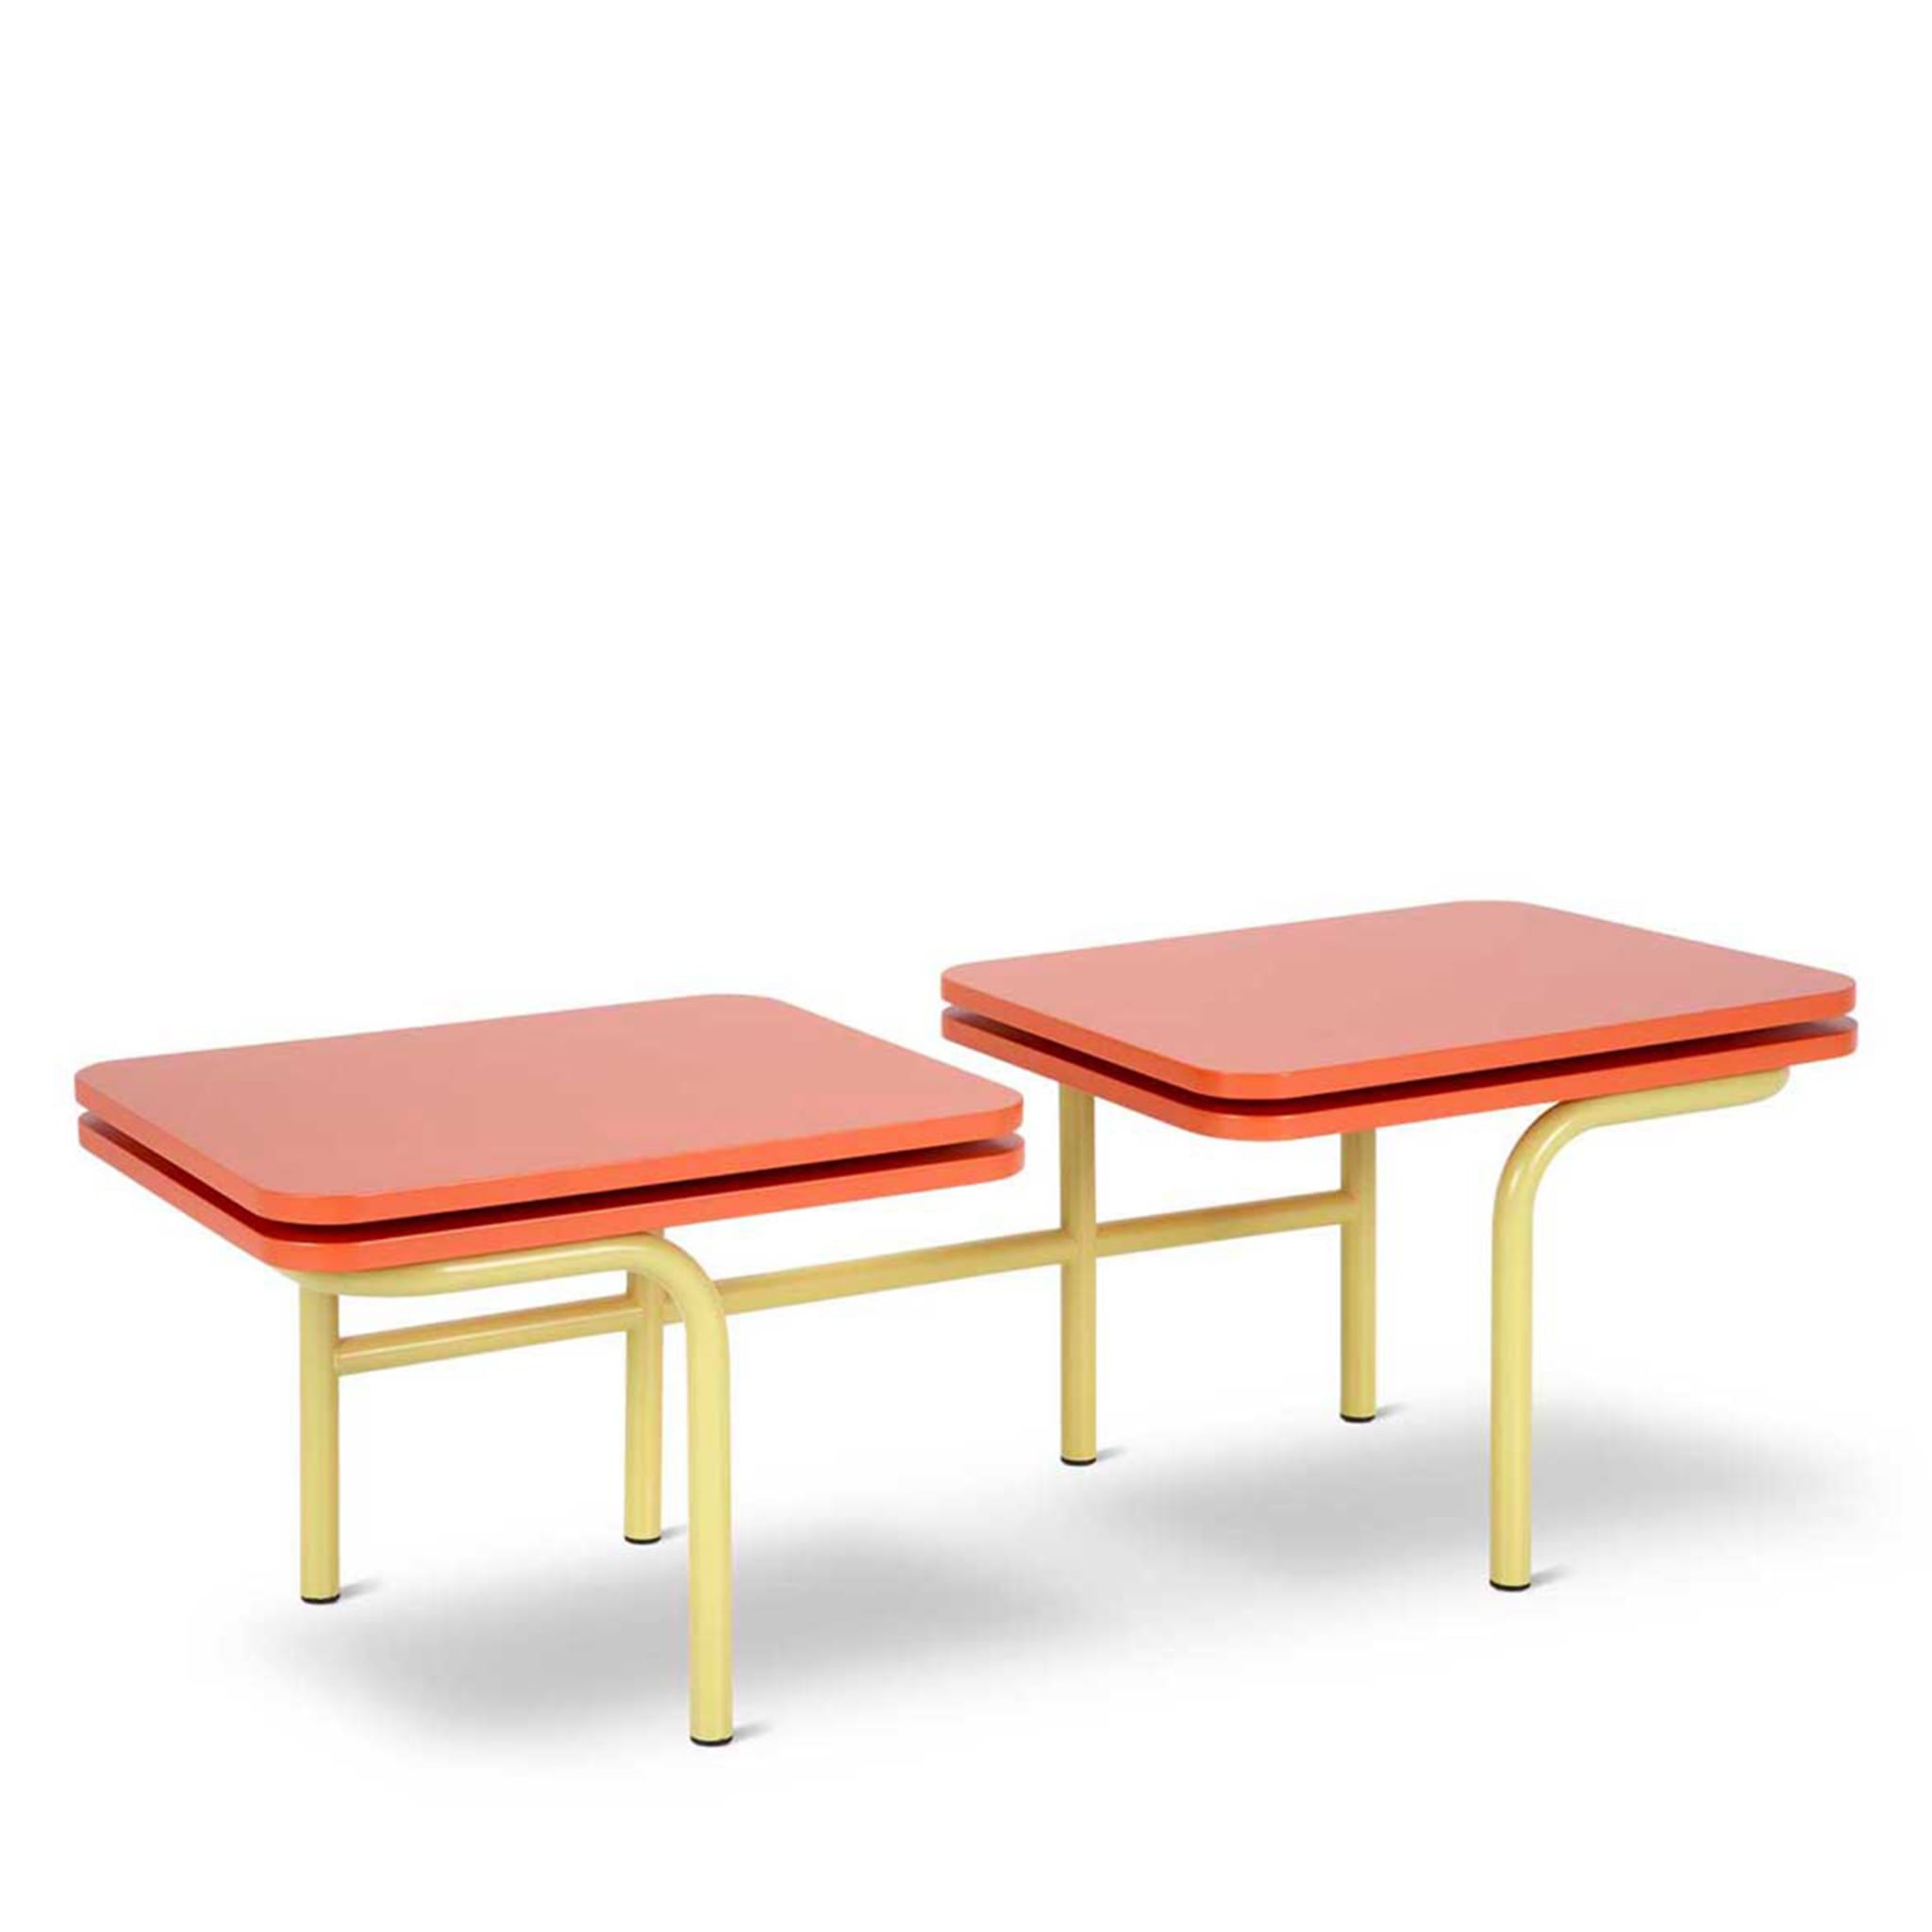 Tavolino Leo a 2 piani, giallo e arancione, di Daria Zinovatnaya - Vista alternativa 1